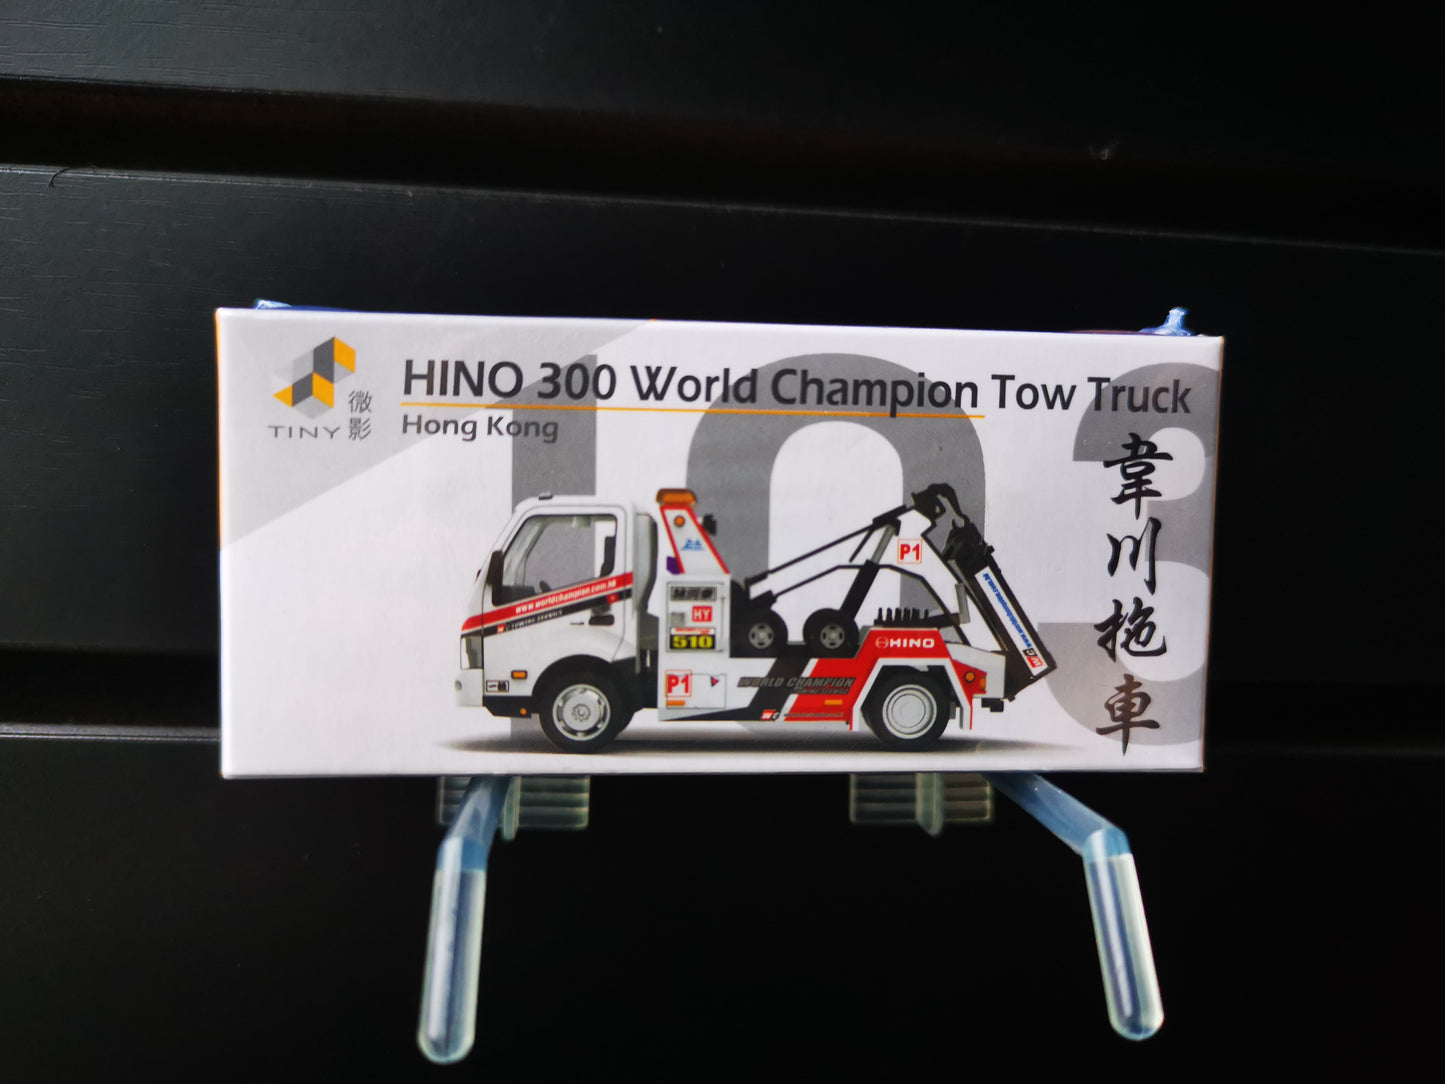 Tiny #103 Hong Kong Hino 300 World Champion Tow Truck